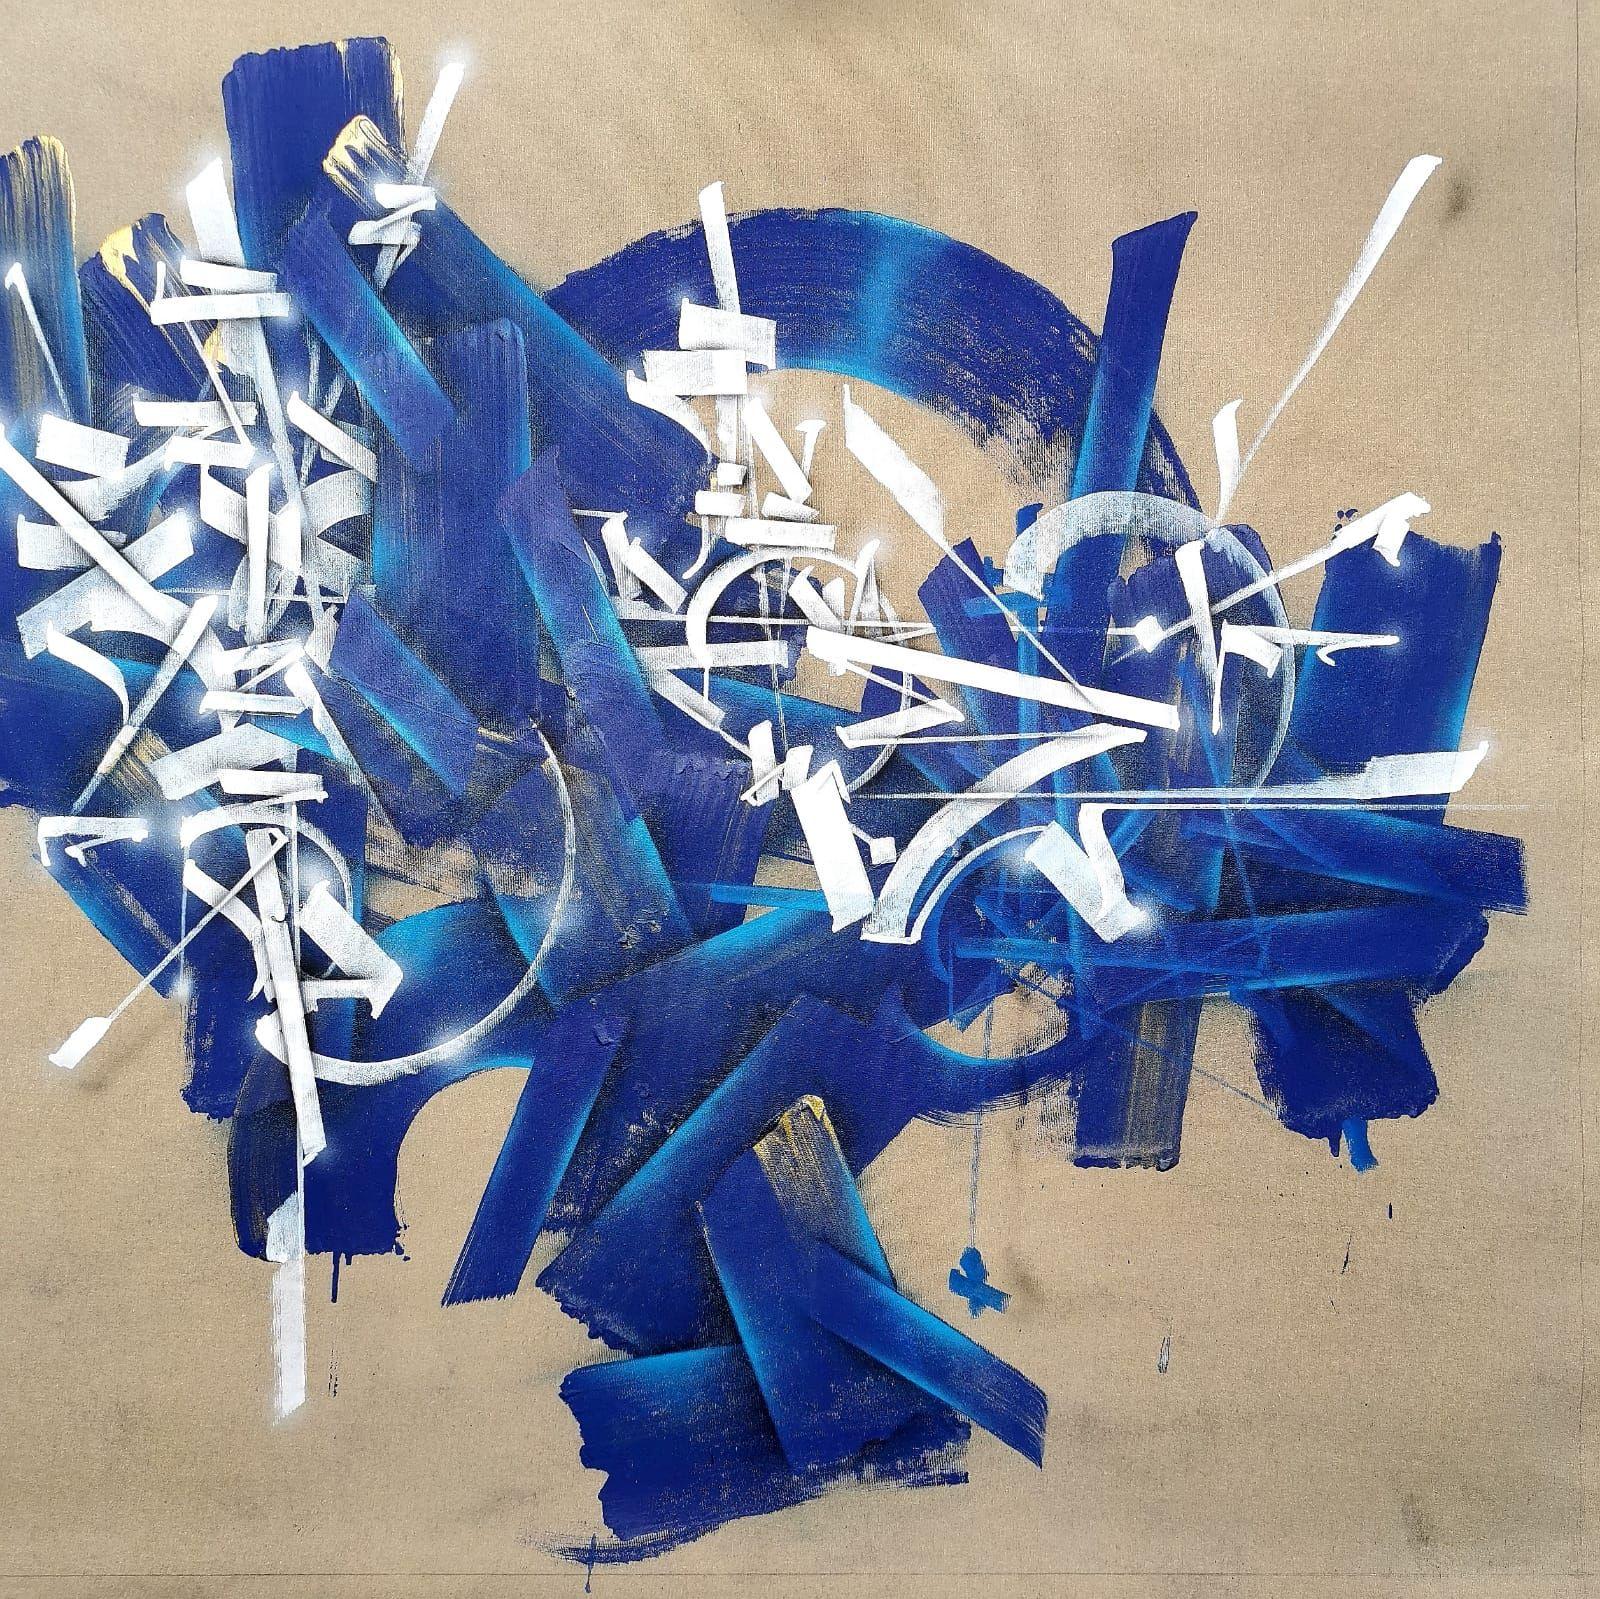 DMVT 2904, Abstraktion und kalligrafische Kunst des französischen Straßenkünstlers SOKLAK – Mixed Media Art von Soklak